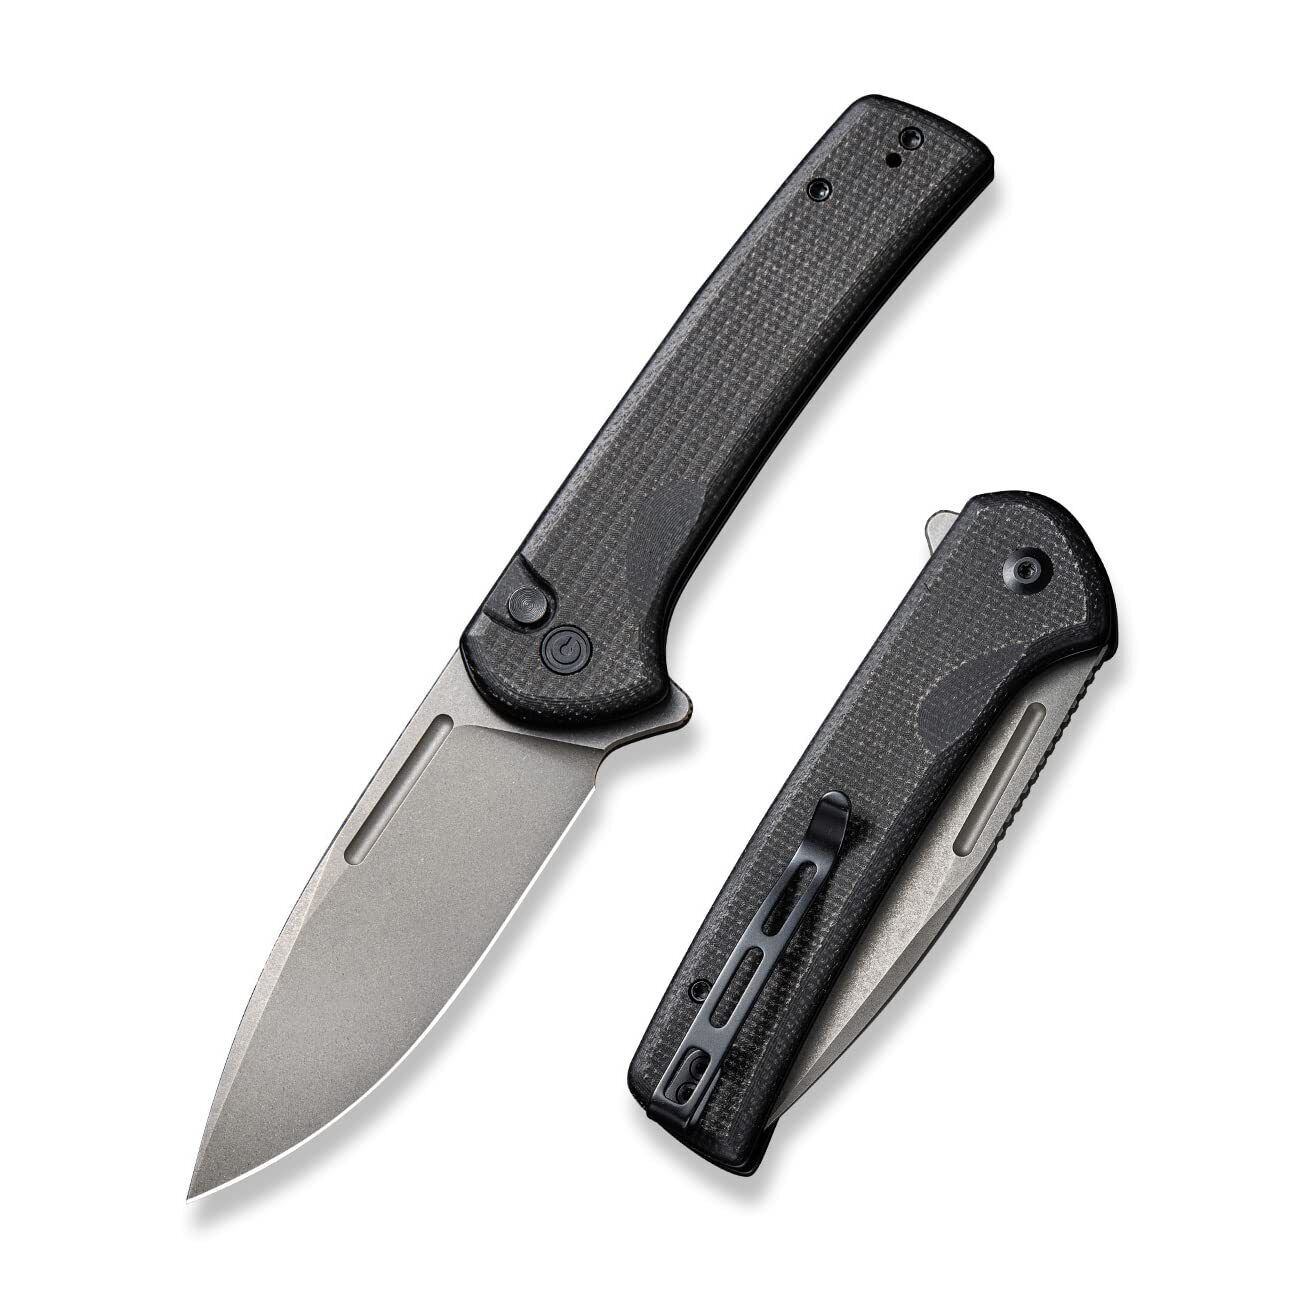 New Civivi Conspirator Button Lock Black Folding Poket Knife  C21006-1